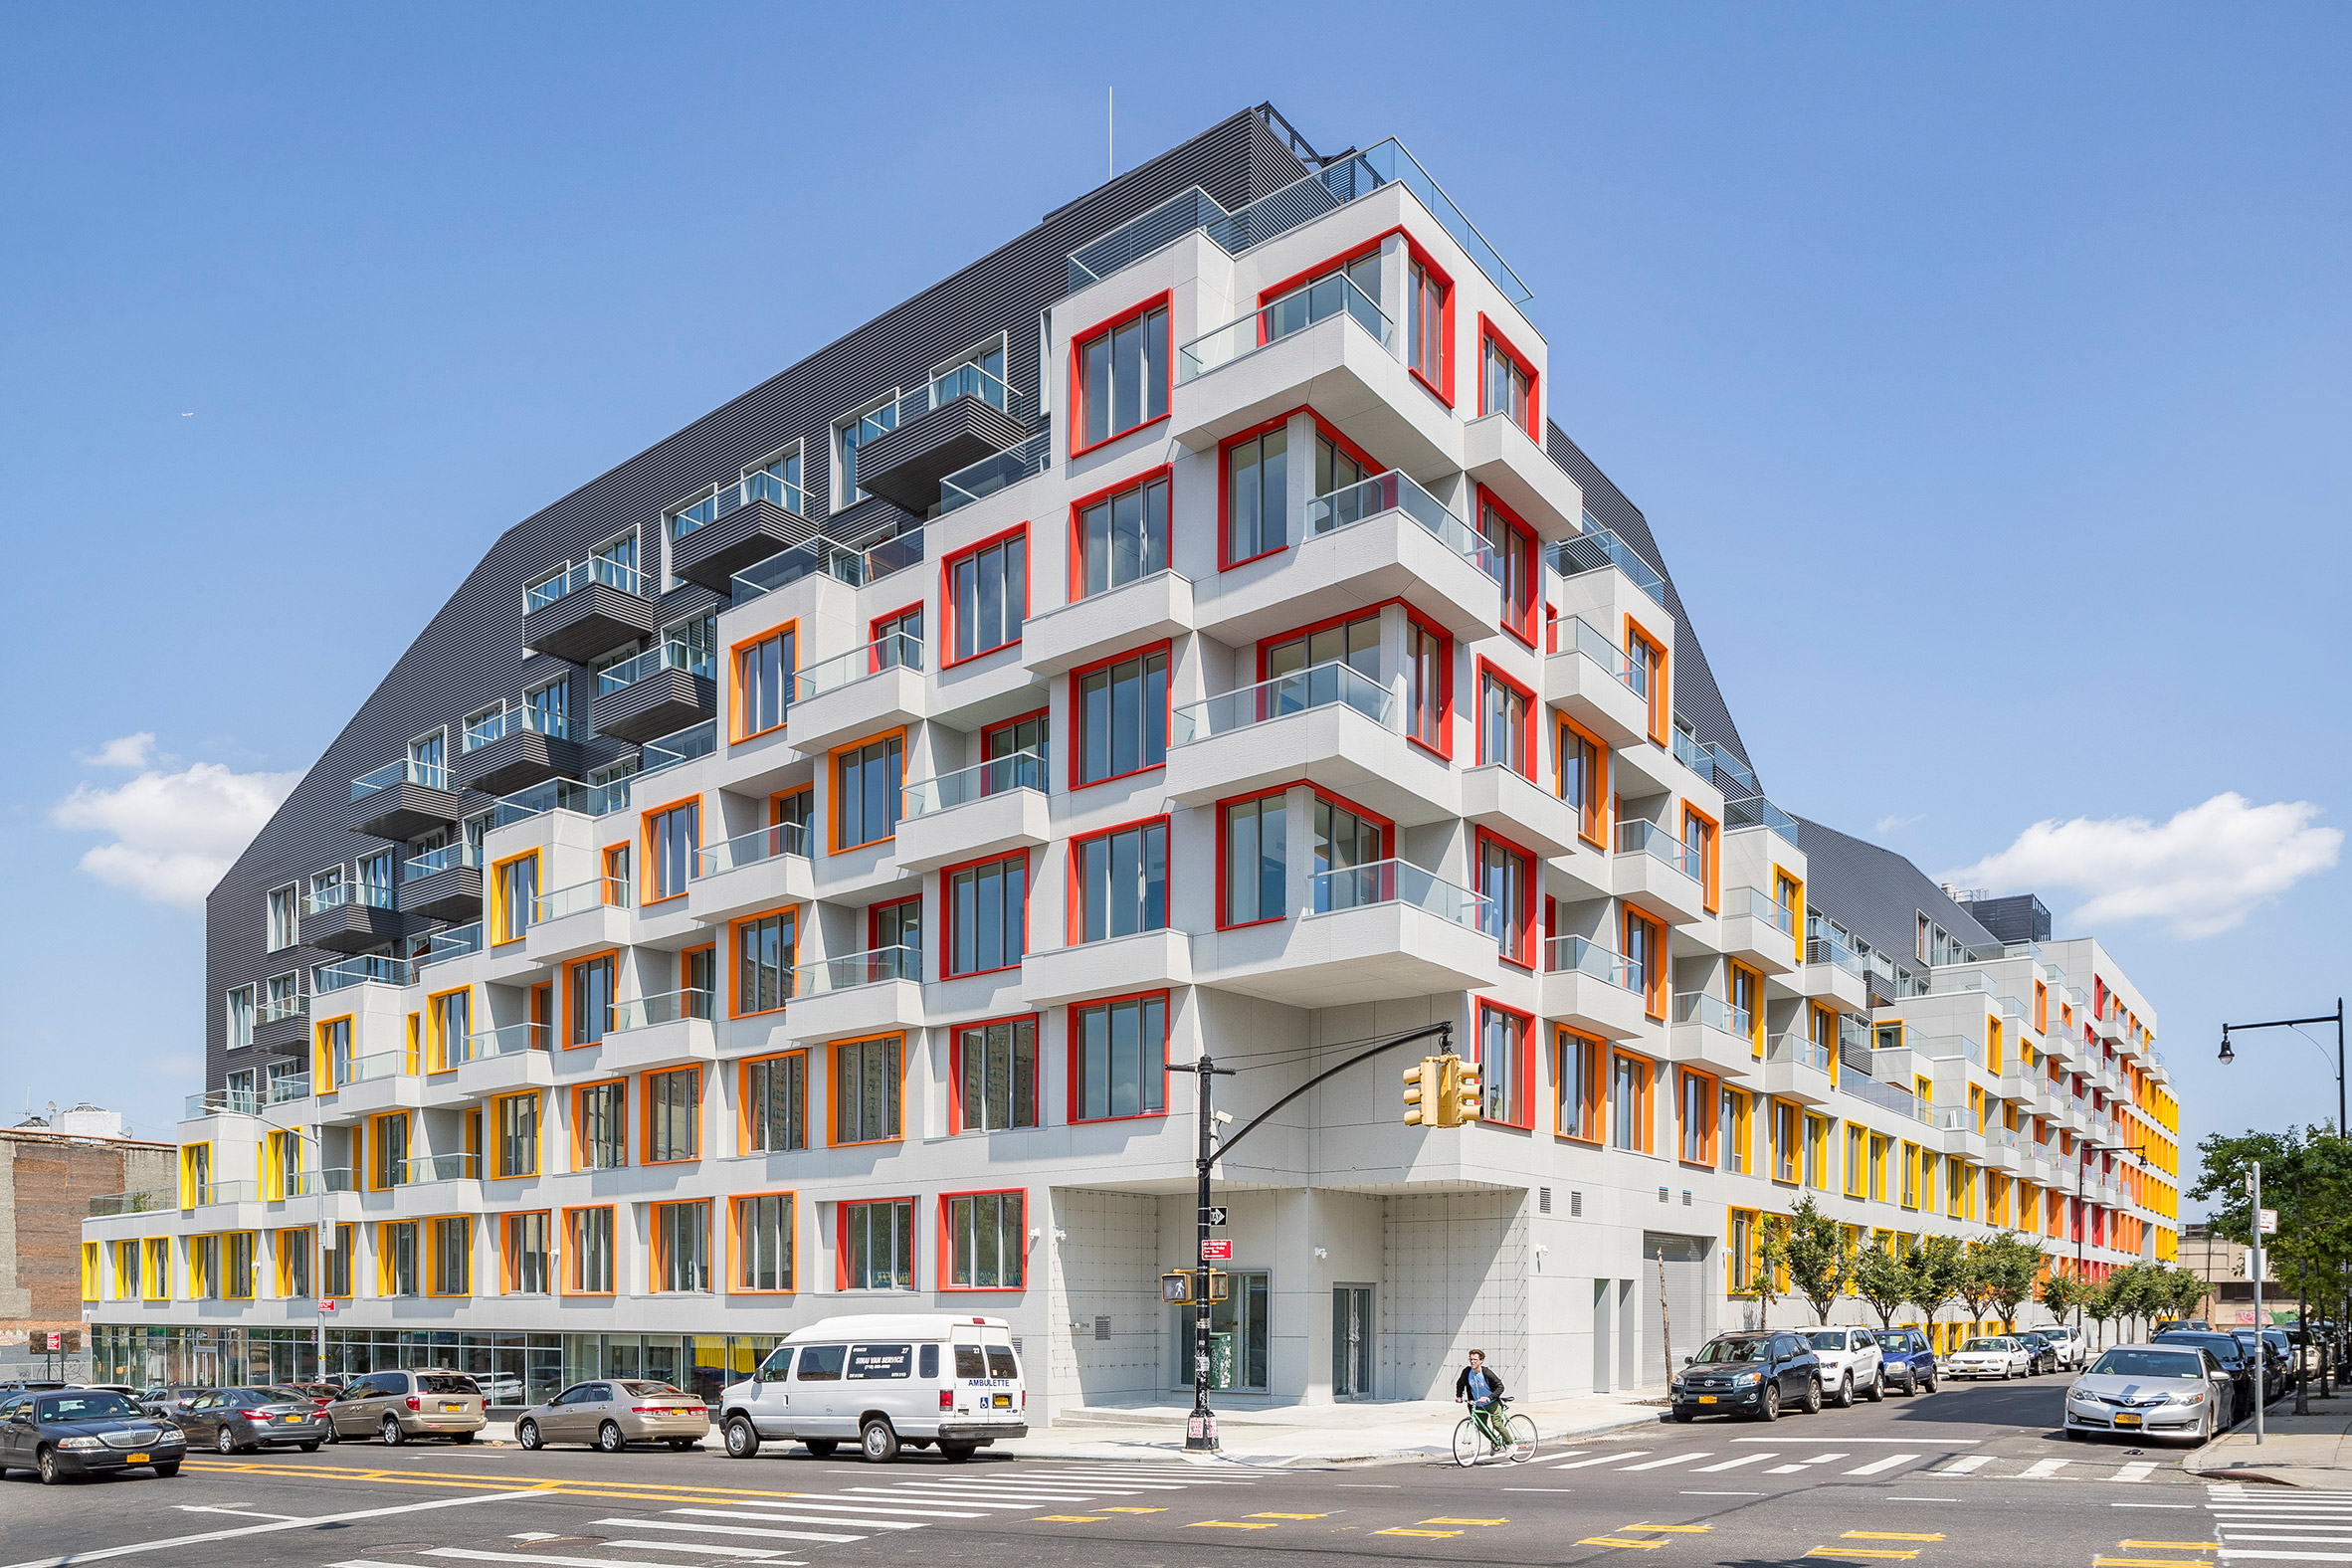 The Rheingold luxury apartment complex in Bushwick Brooklyn by ODA